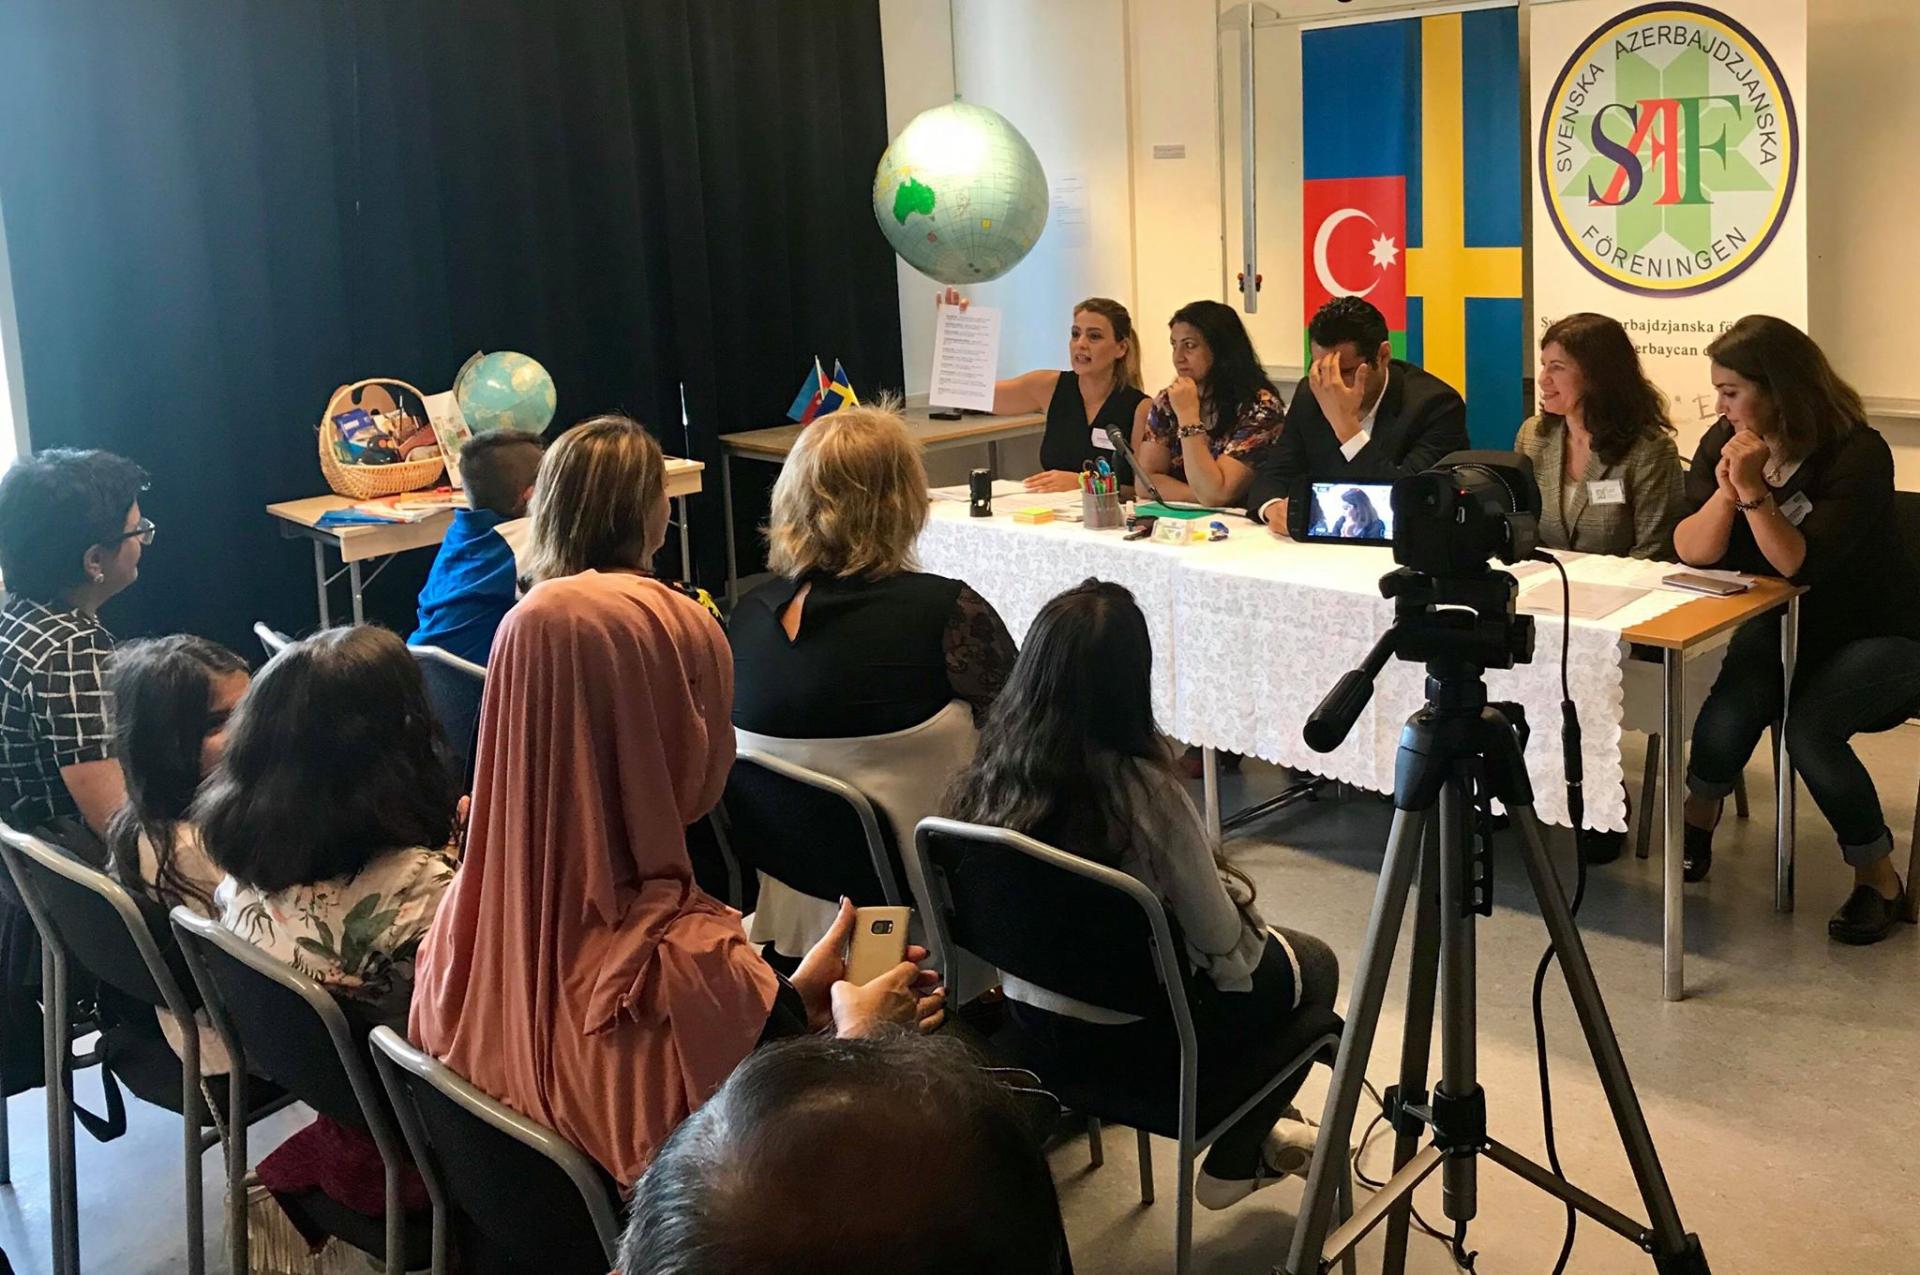 Stokholmda Azərbaycan tədris kursları açılıb (FOTO)